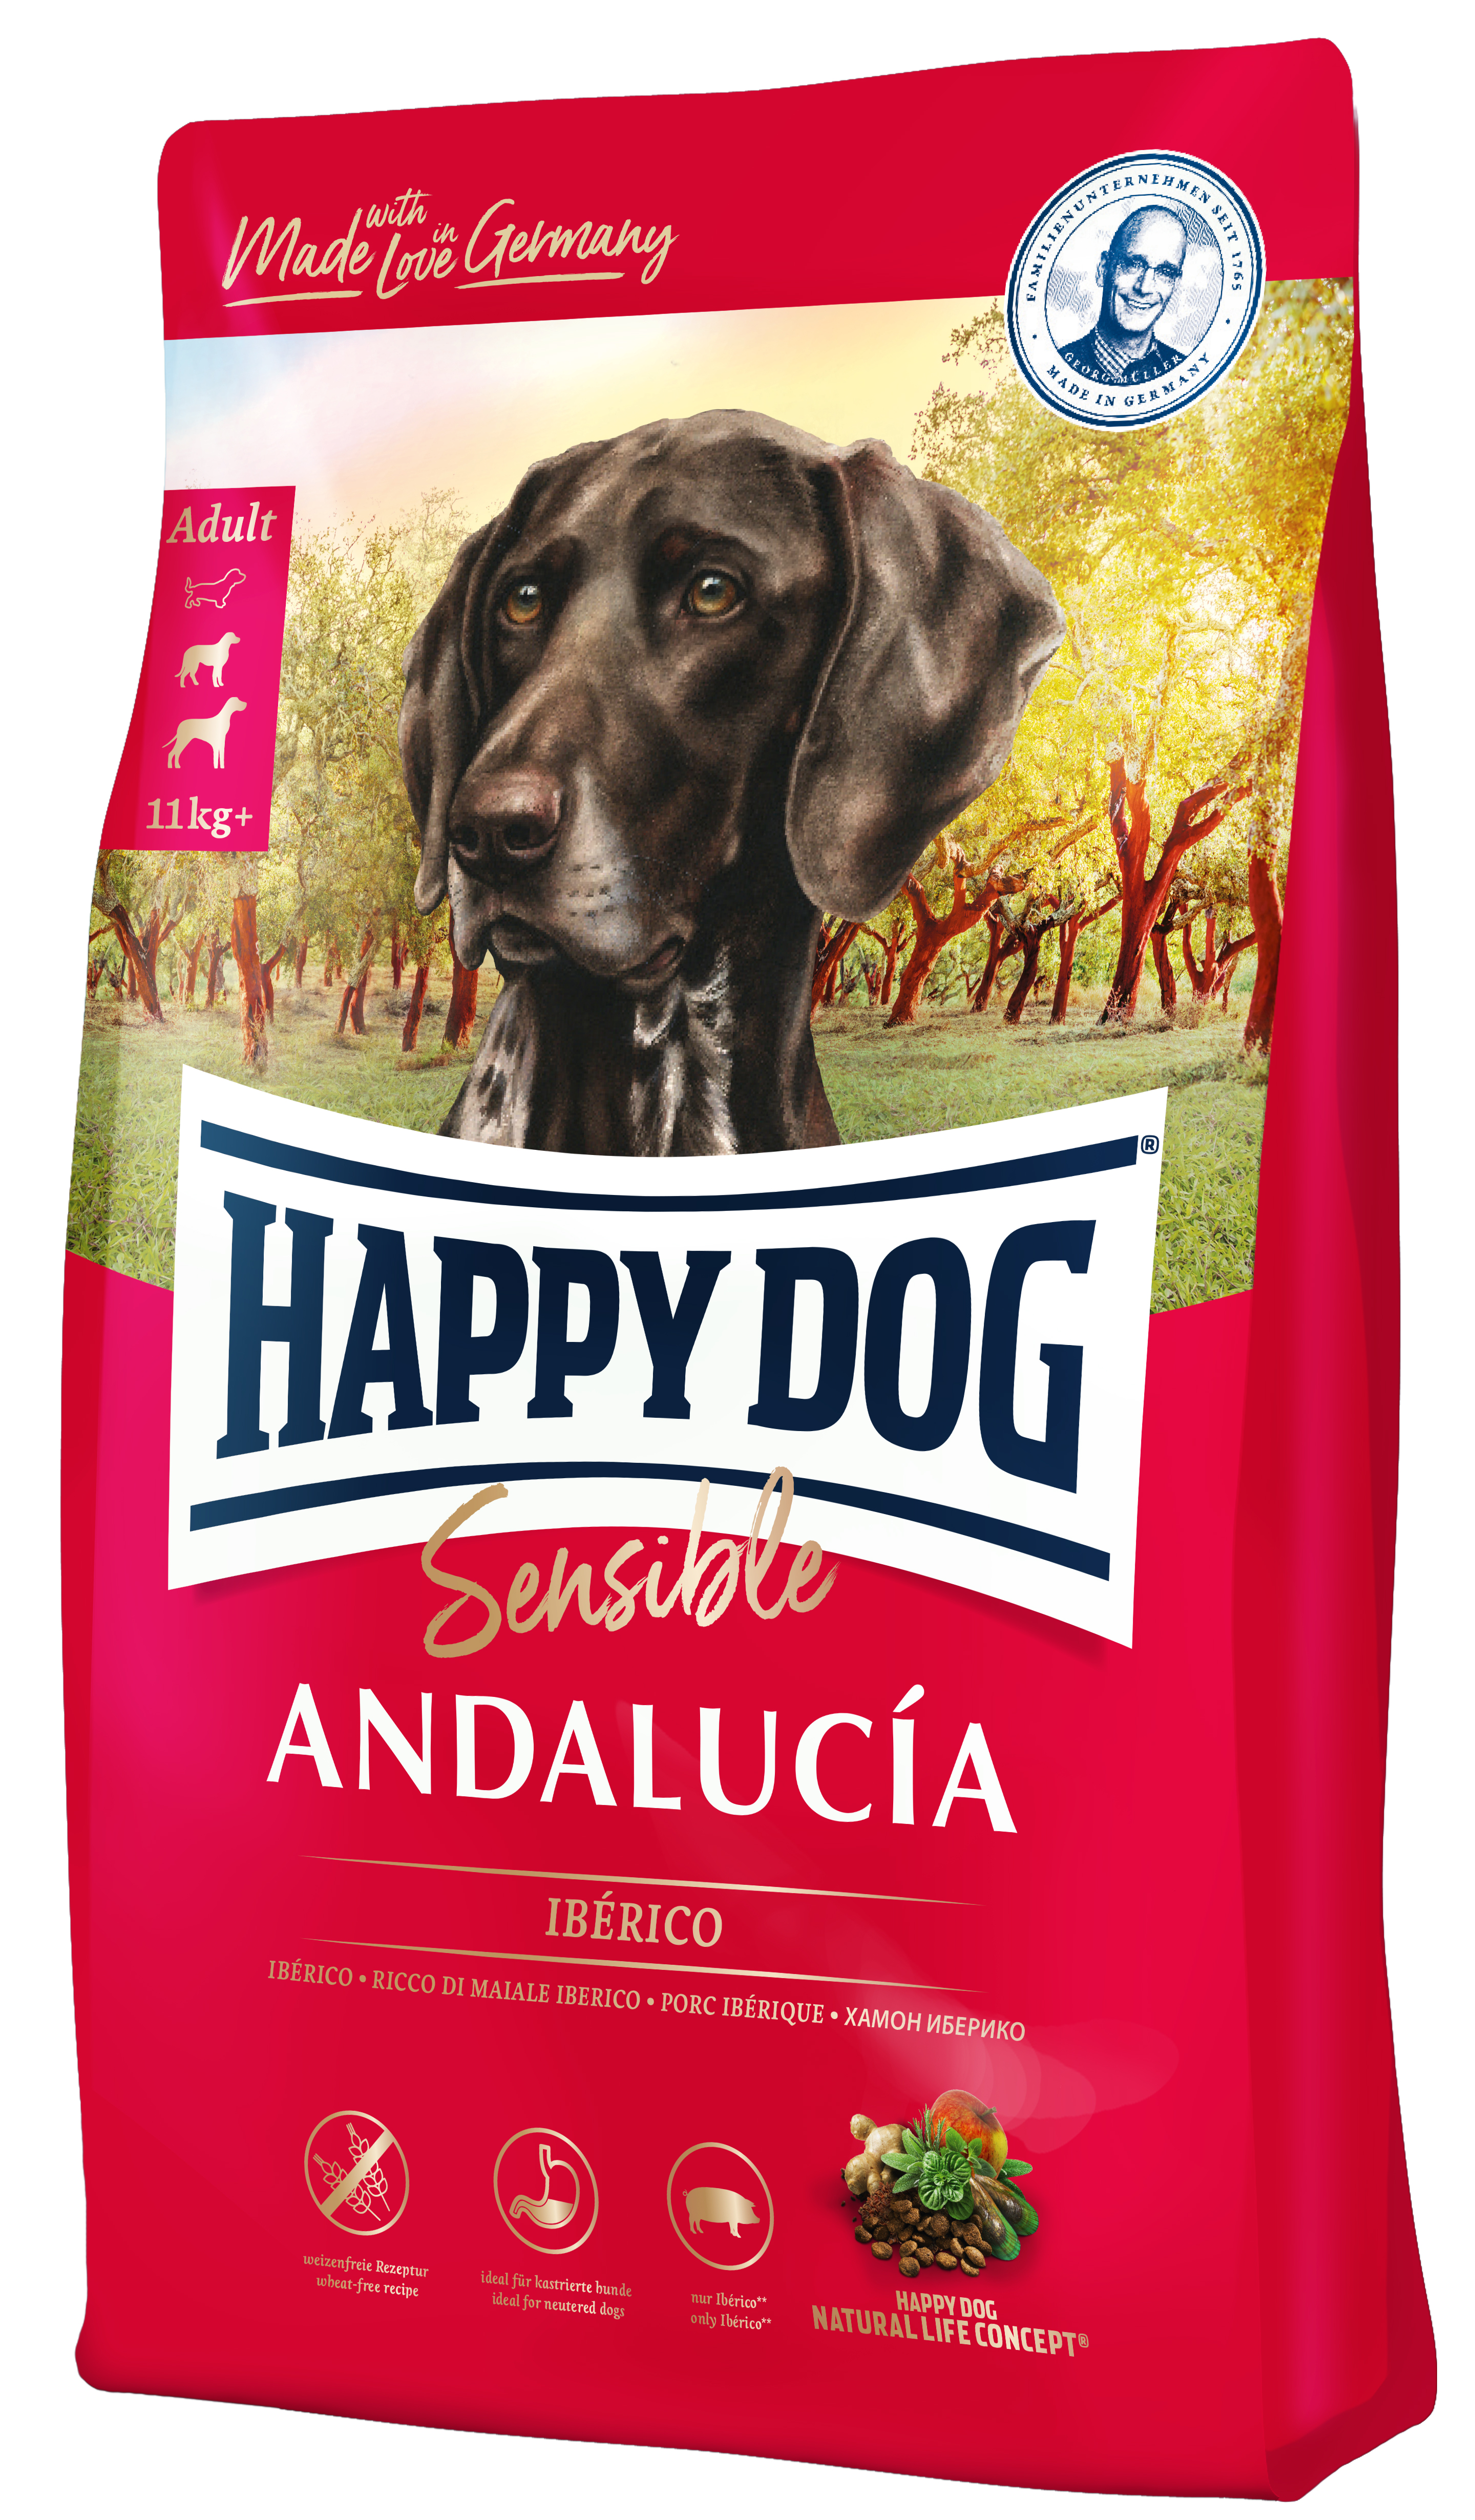 Happy Dog Sensible Andalucía 1 kg